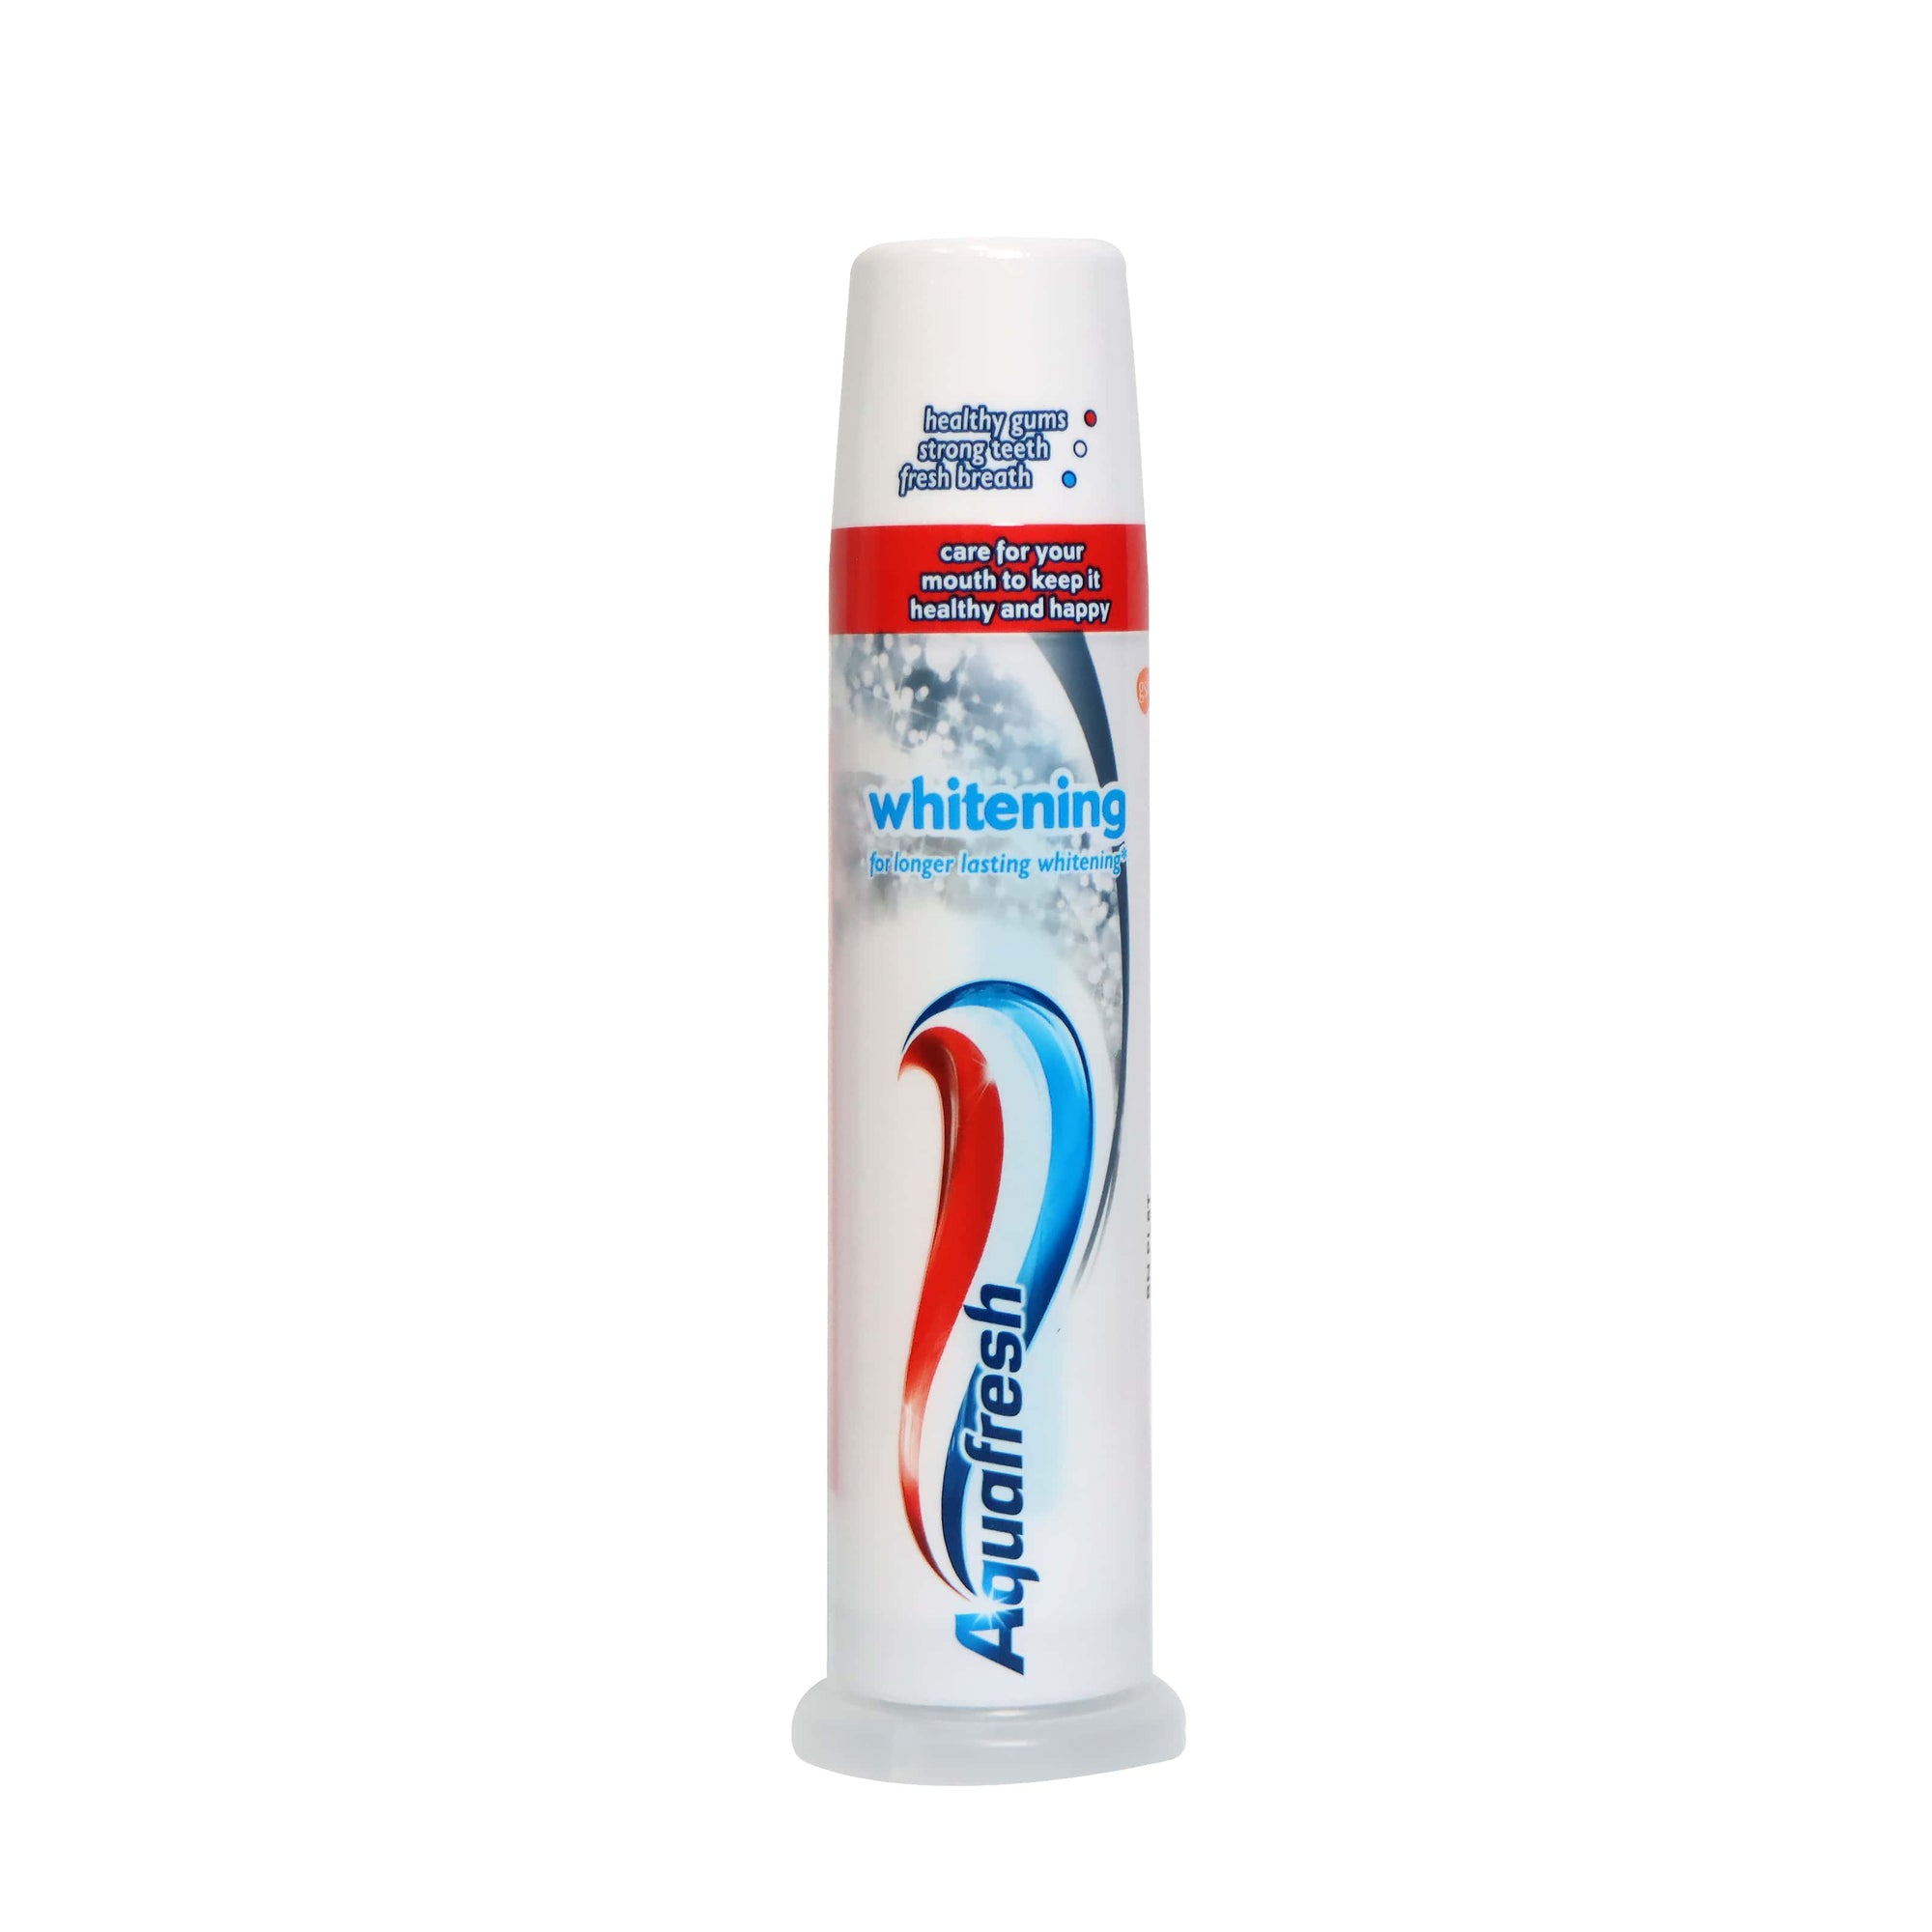 [GSK] Aquafresh Whitening Toothpaste 100ml